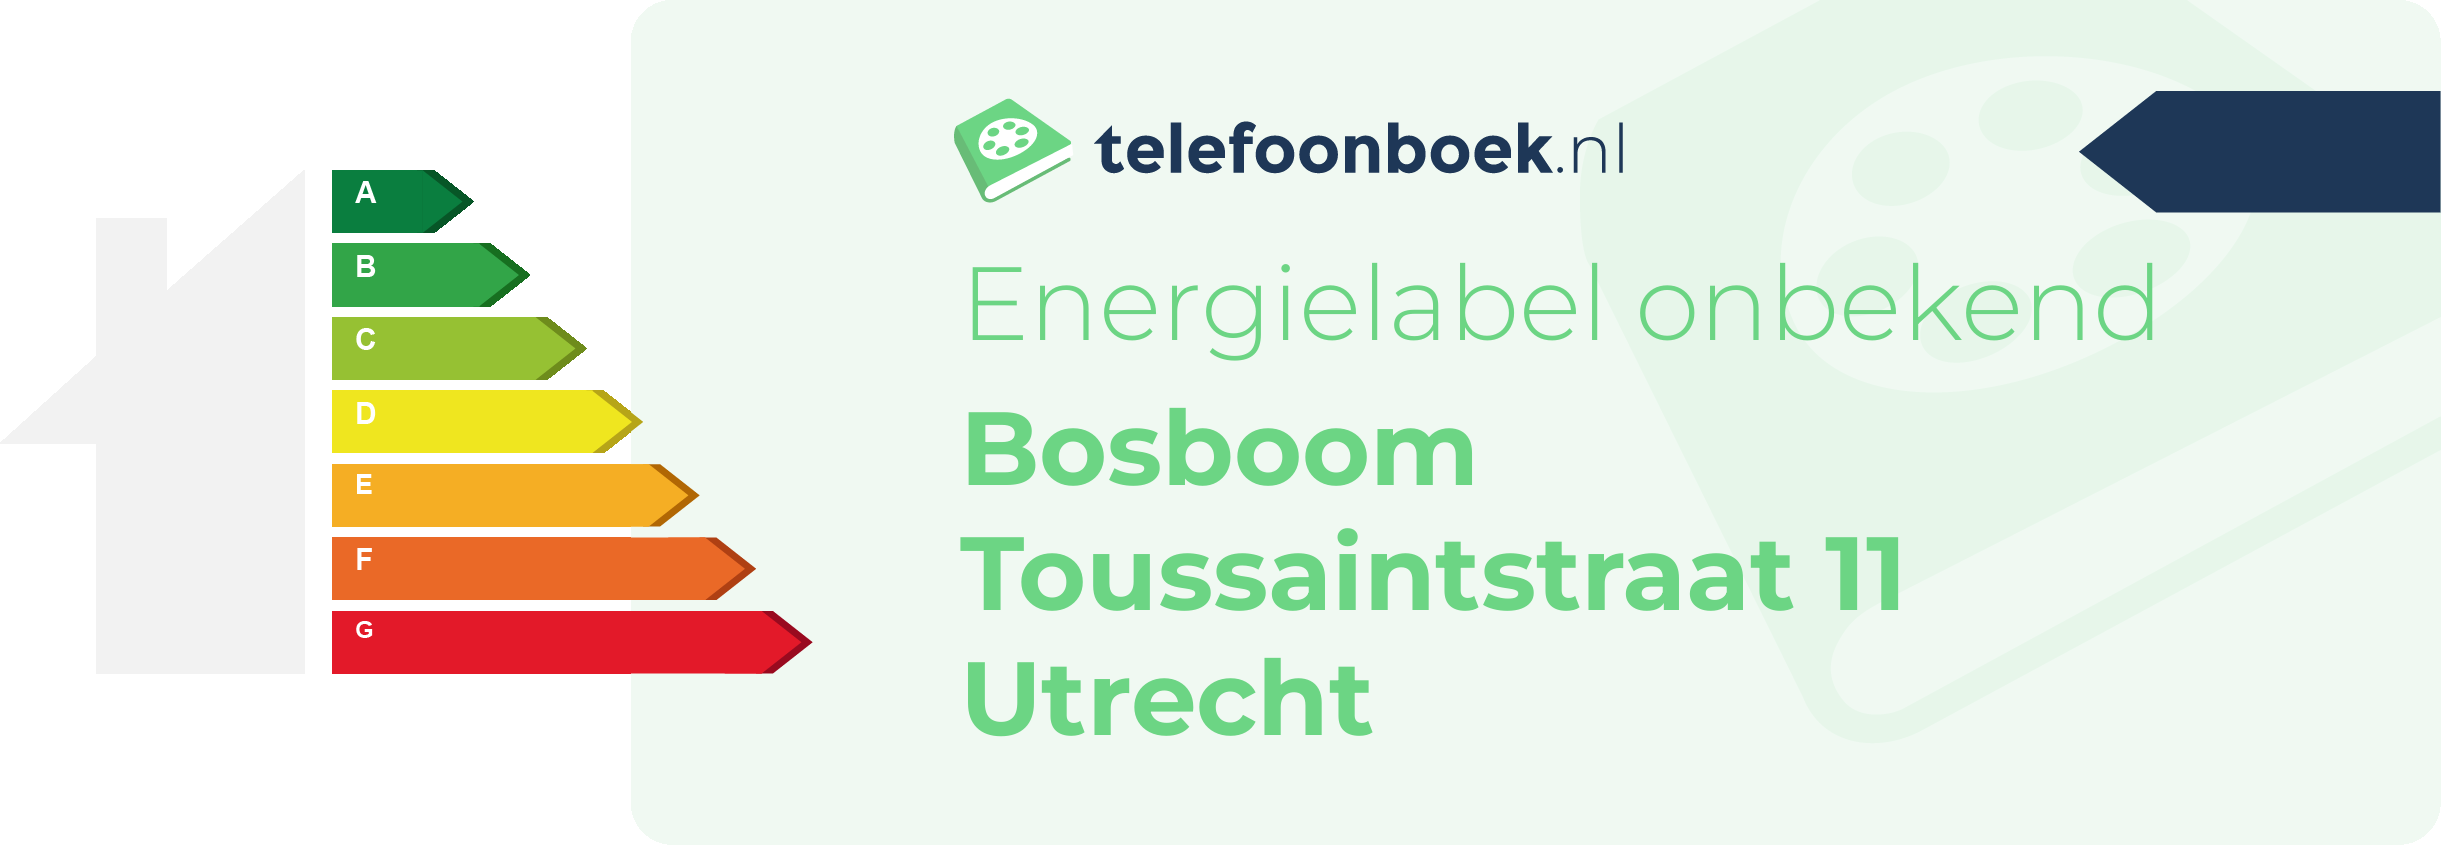 Energielabel Bosboom Toussaintstraat 11 Utrecht